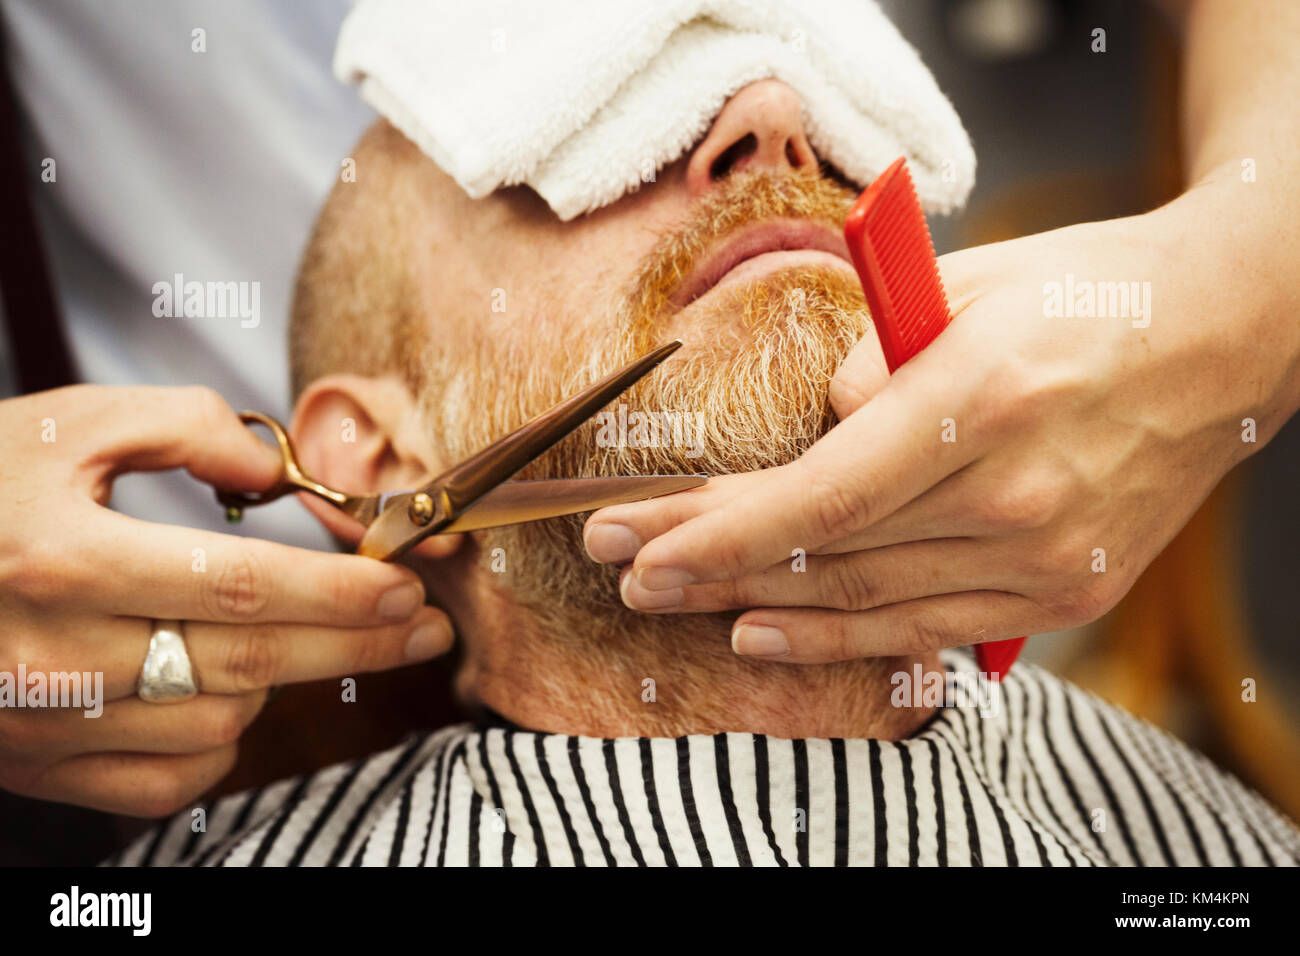 Barbero hombre barbudo con tijeras: fotografía de stock © Tverdohlib.com  #132674134